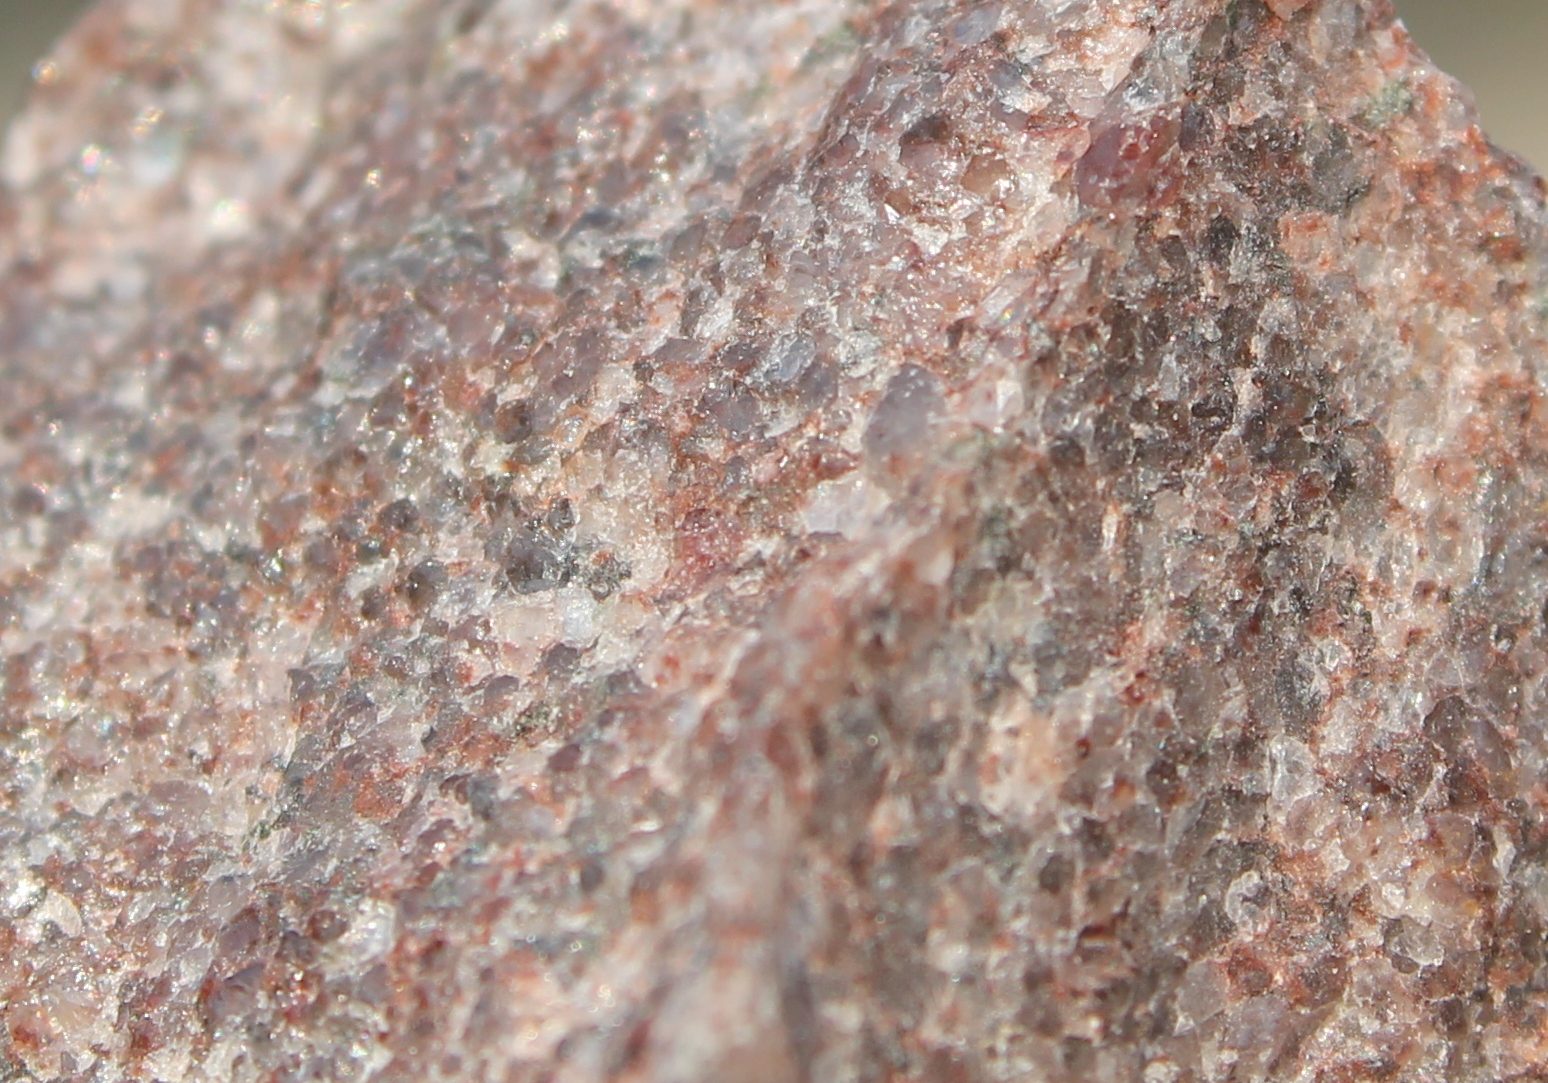 Interlocking quartz grains in a quartzite.